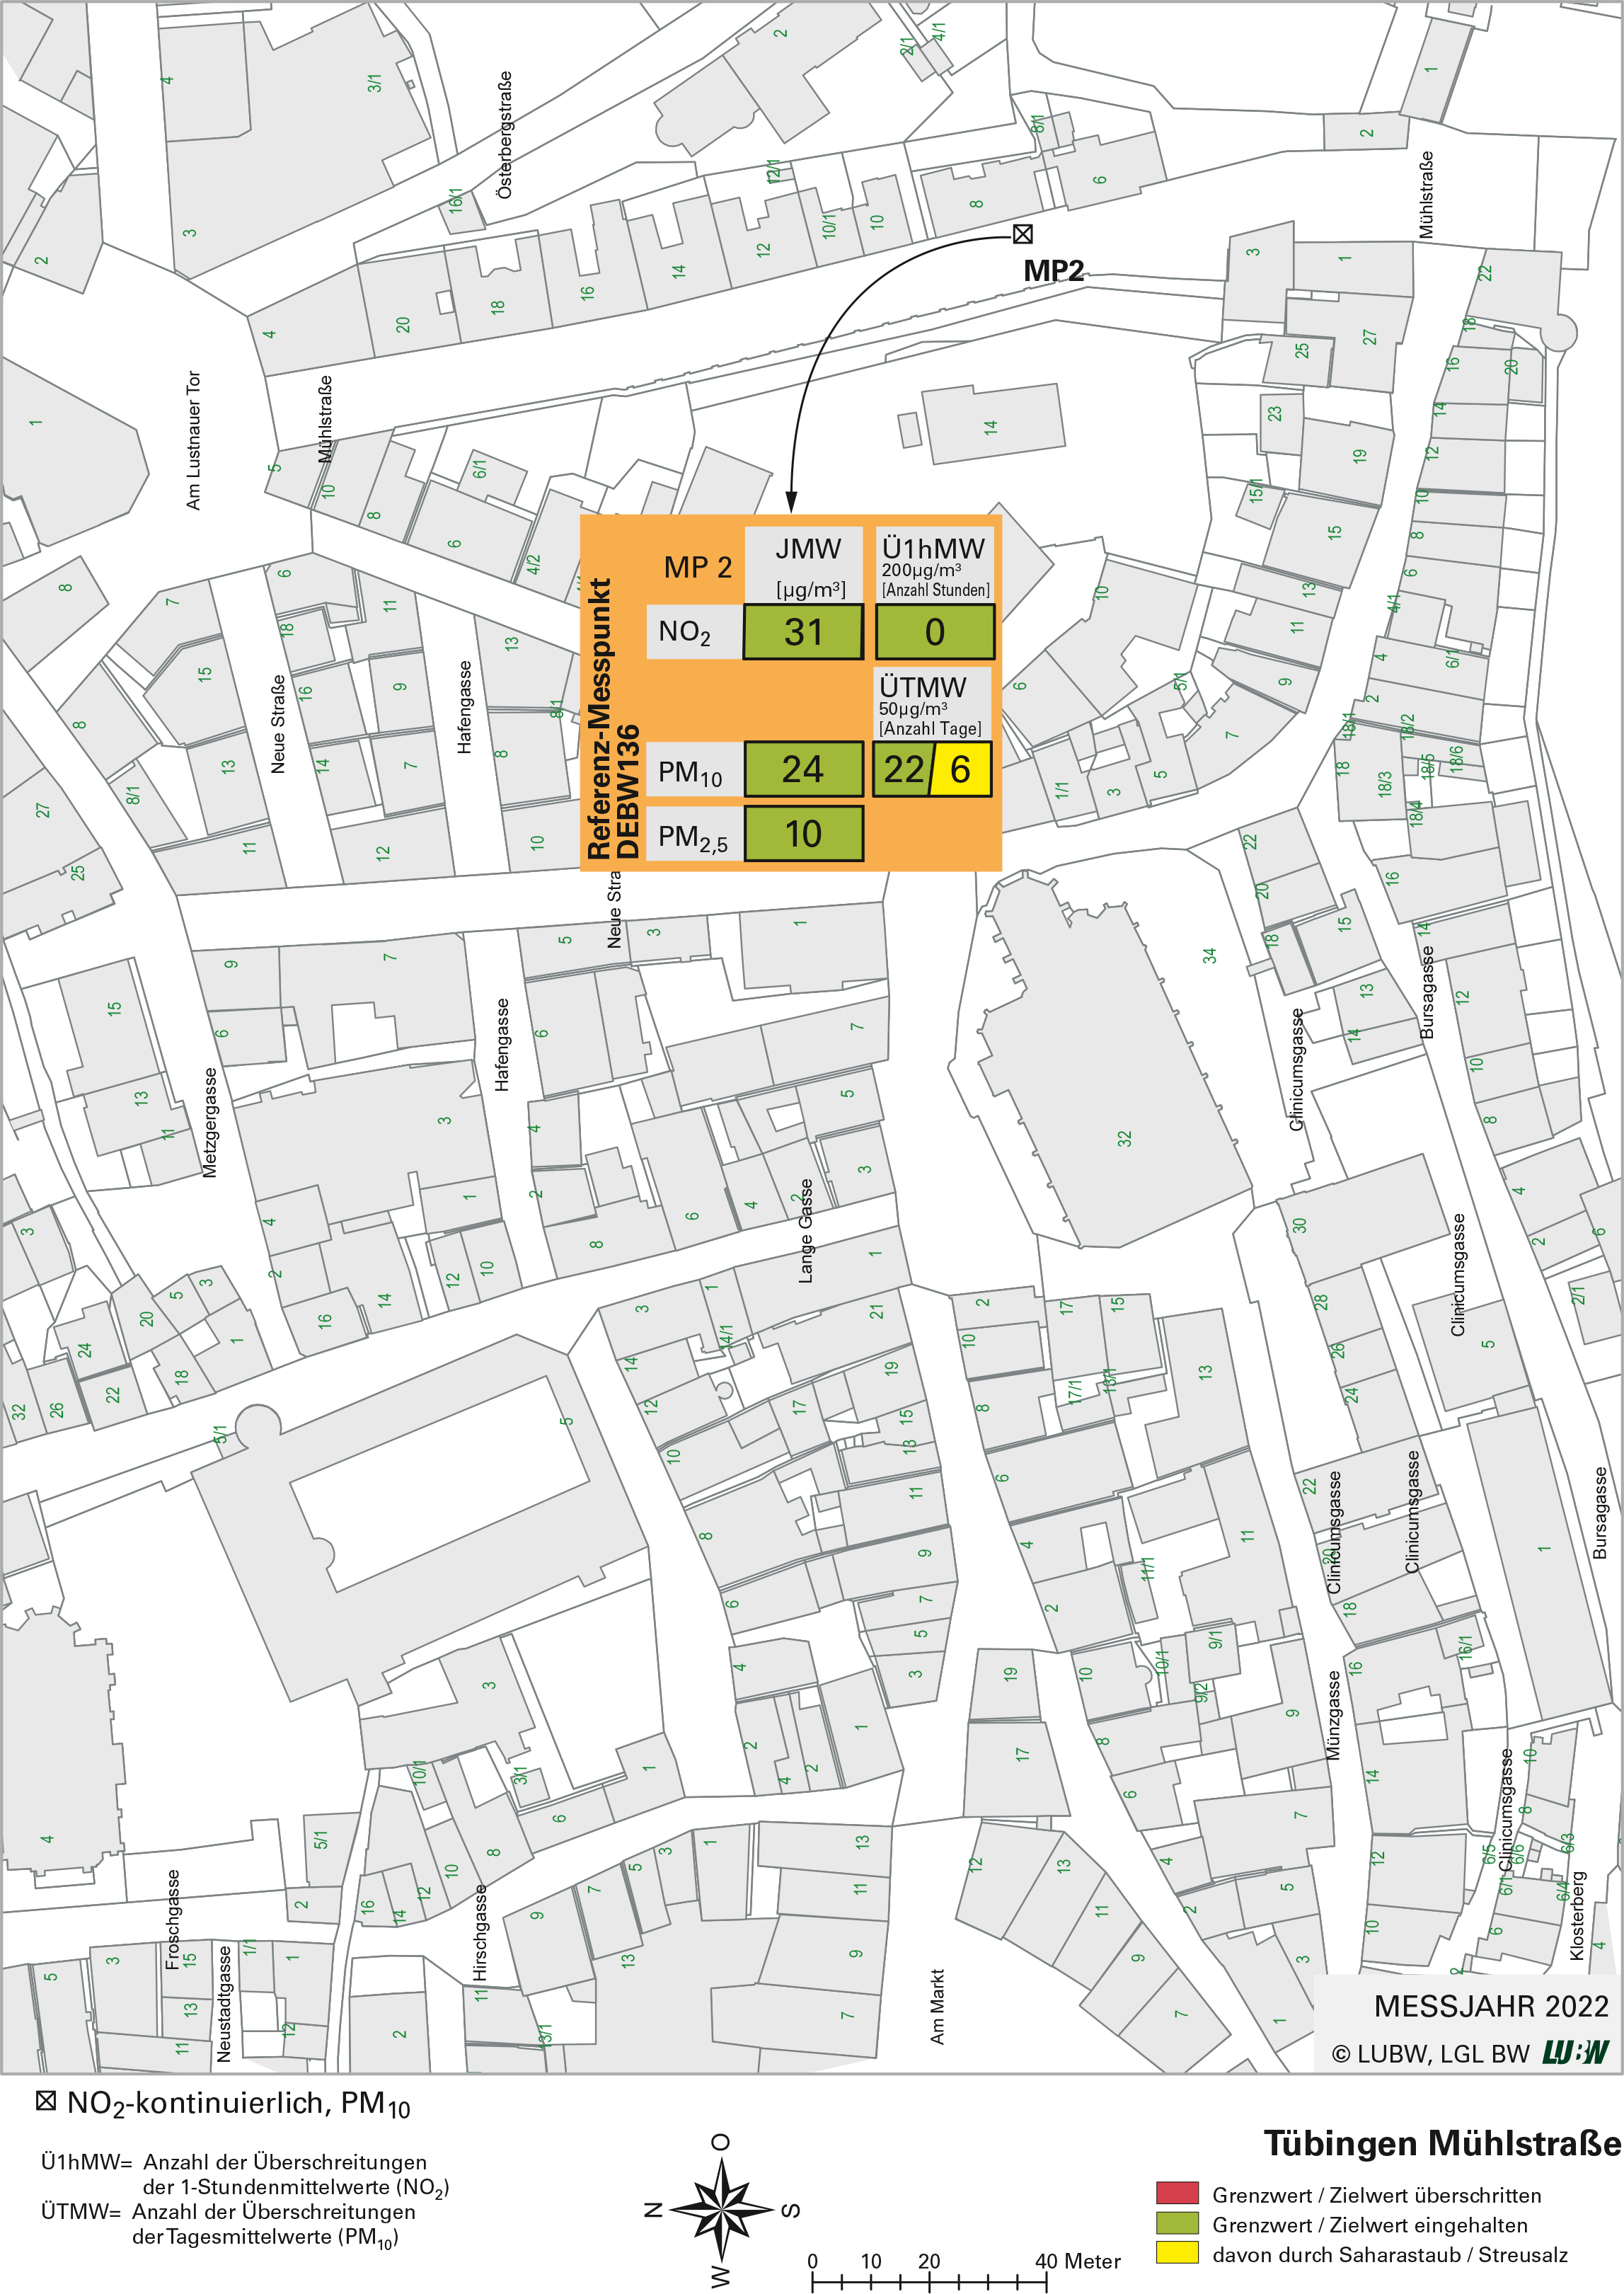  Kartenausschnitt, der die Lage der Messstelle Tübingen Mühlstraße (Referenzmesspunkt) zeigt. Dargestellt sind zudem die Ergebnisse (Jahresmittelwerte 2022, Überschreitungen 2022) der gemessenen Belastung durch Stickstoffdioxid, Partikel PM10 und Partikel PM2,5.